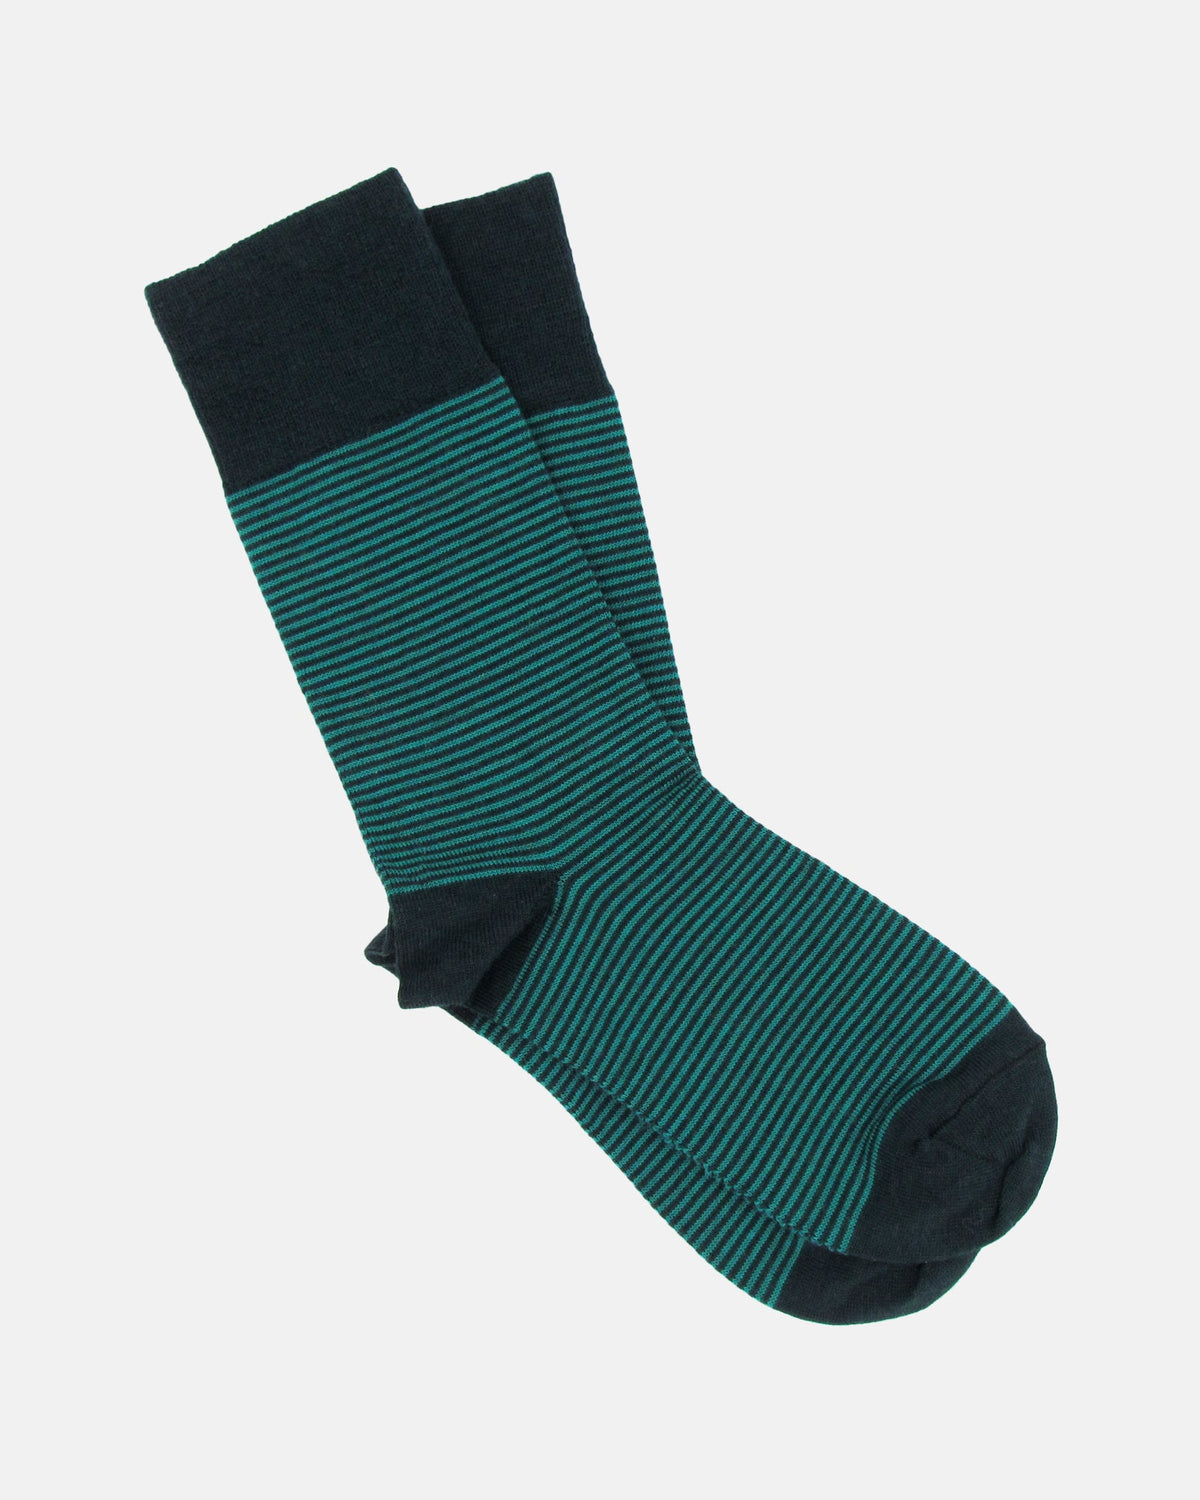 Pencil Stripe Wool Socks - Bottle Green/Arsenic - BRIT LOCKER